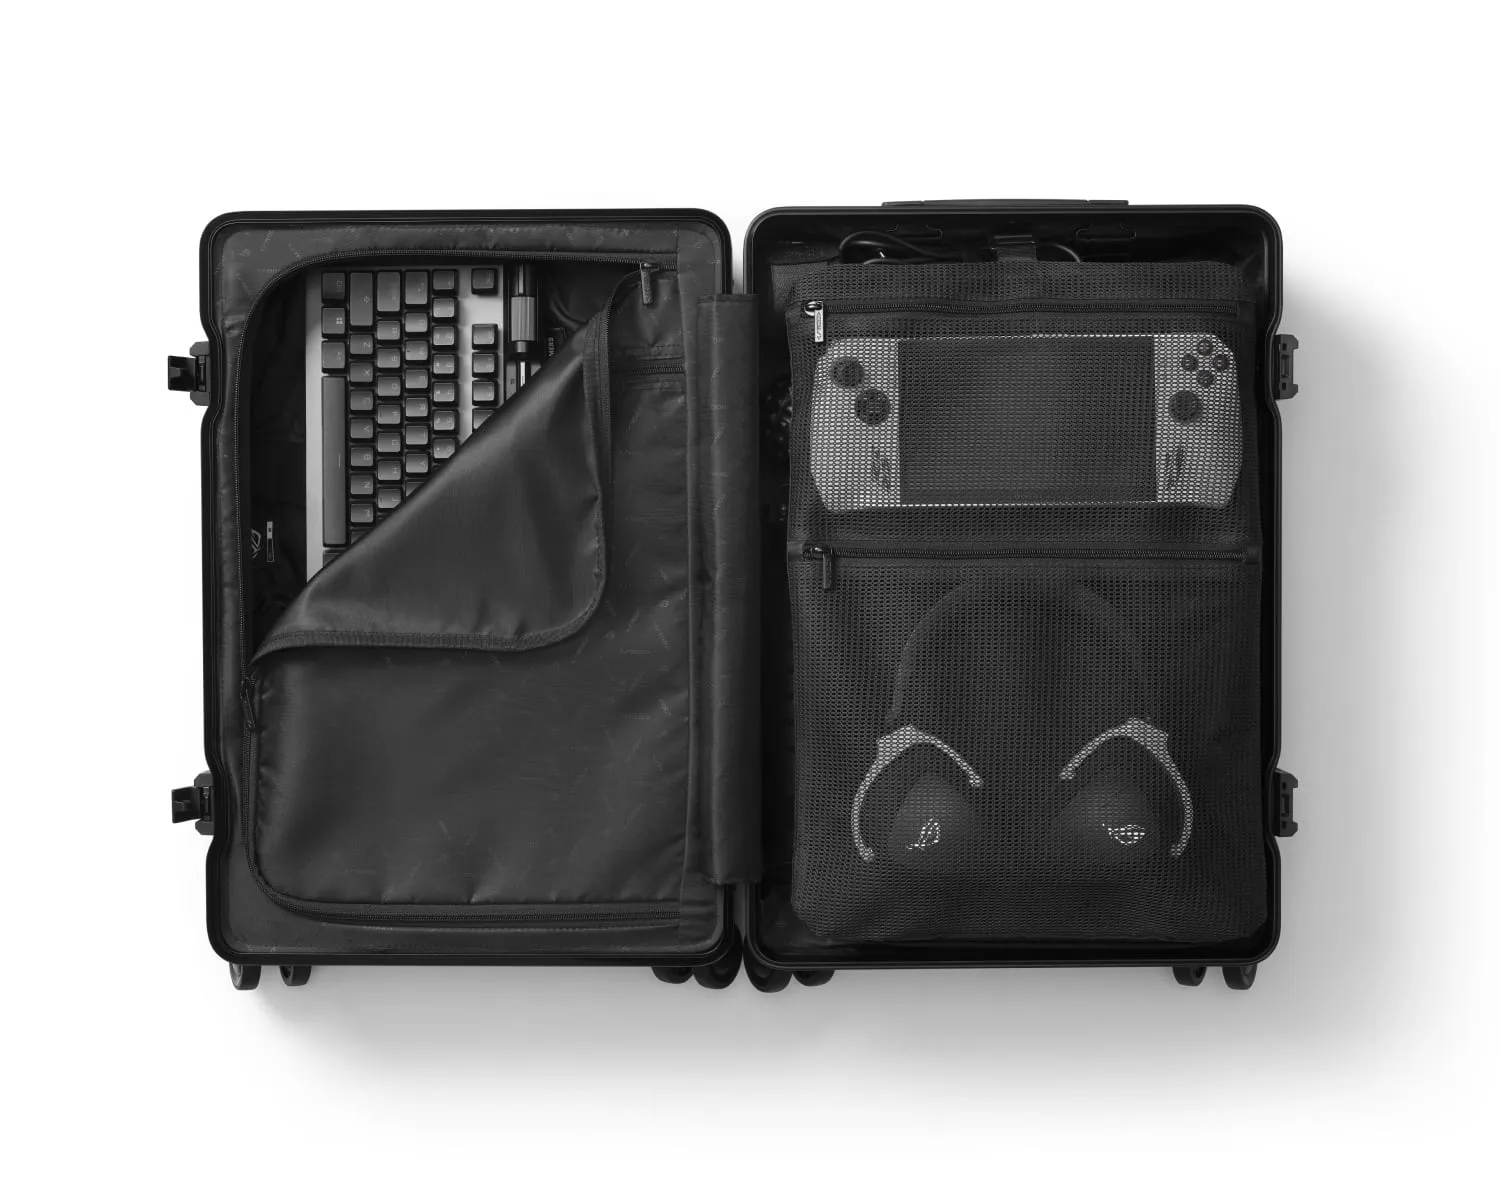 Pohľad na otvorenú batožinu ROG SLASH Hard Case, vo vnútri sú vidieť klávesnice, slúchadlá a handheld ROG Ally